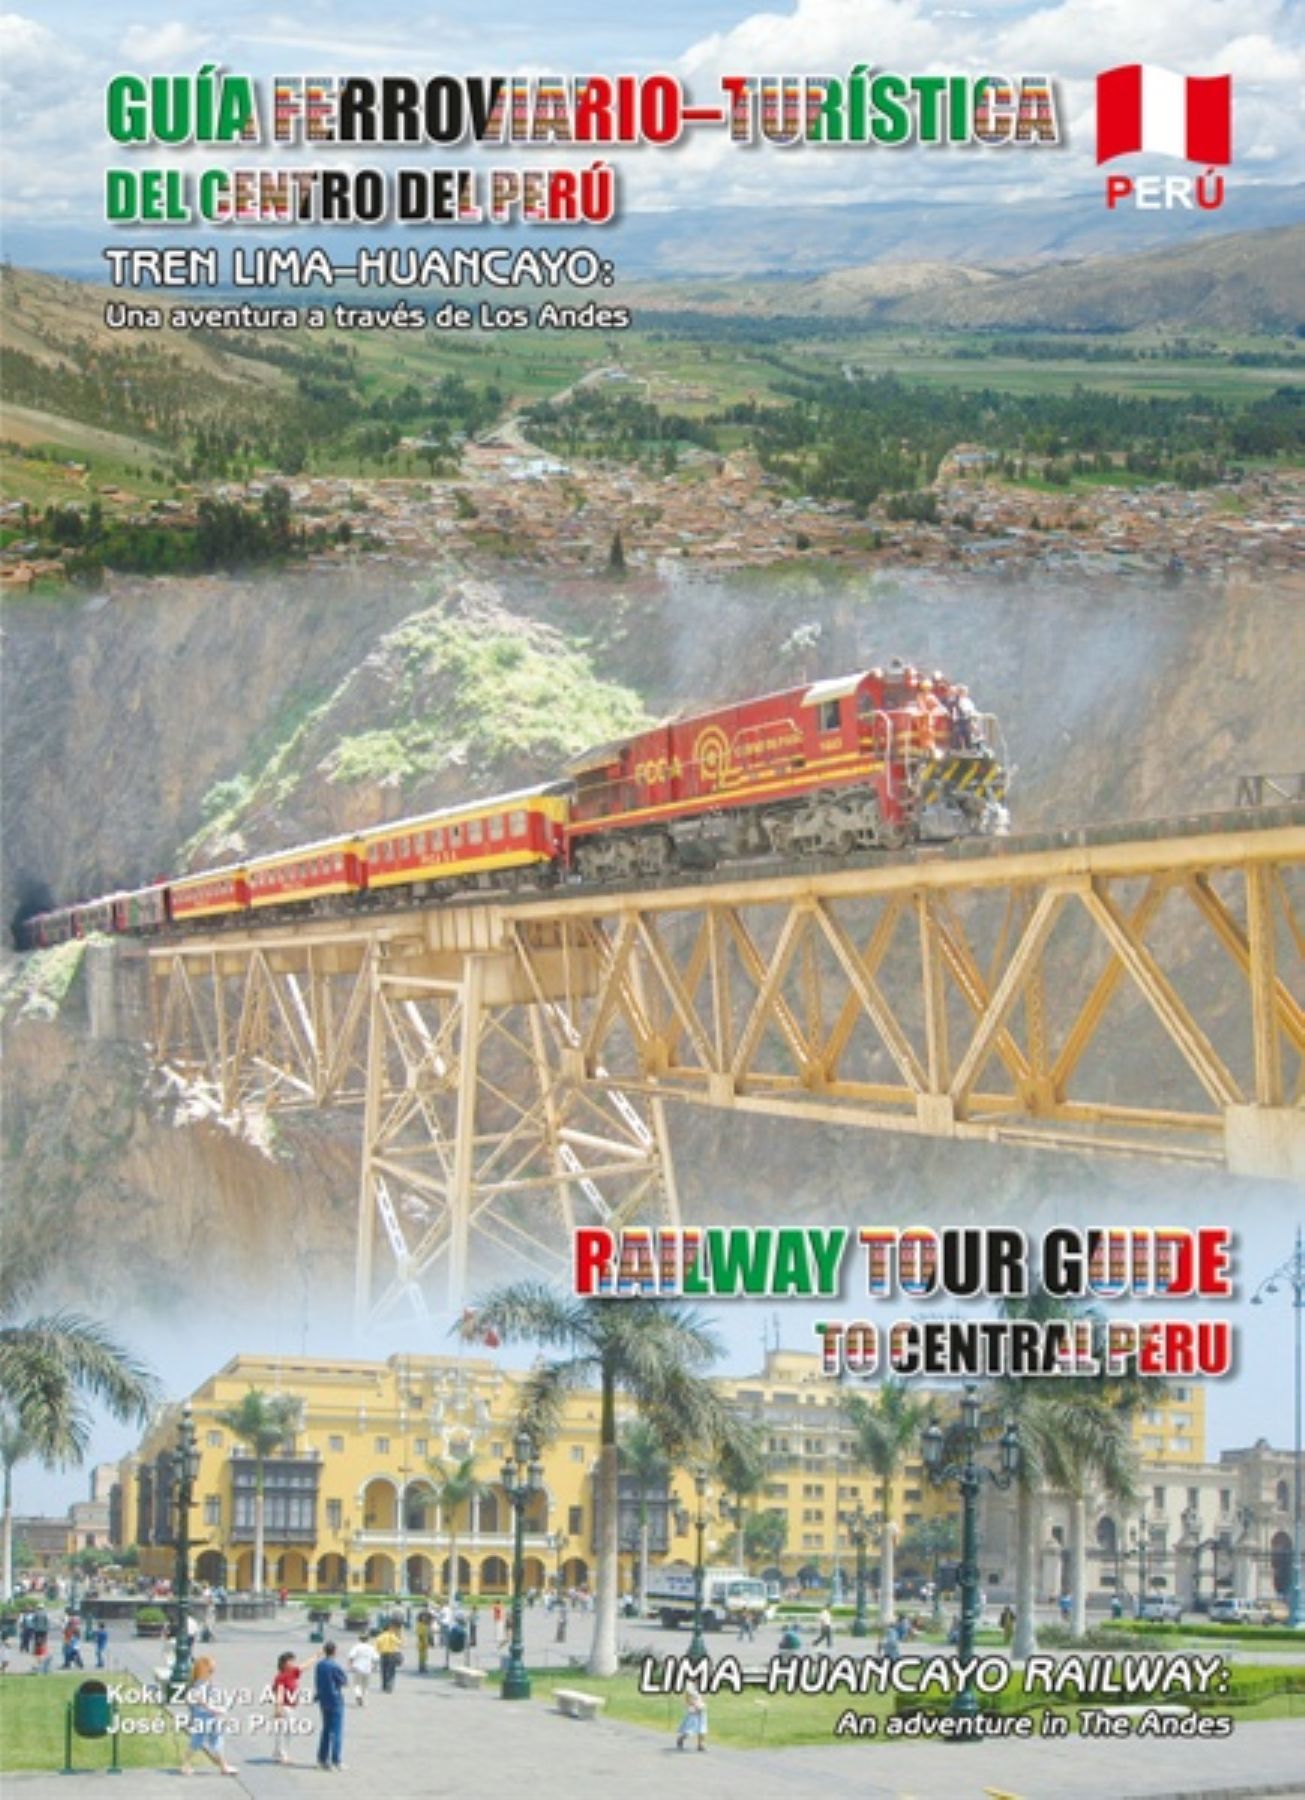 Elaboran primera guía de turismo en ruta ferroviaria LimaHuancayo